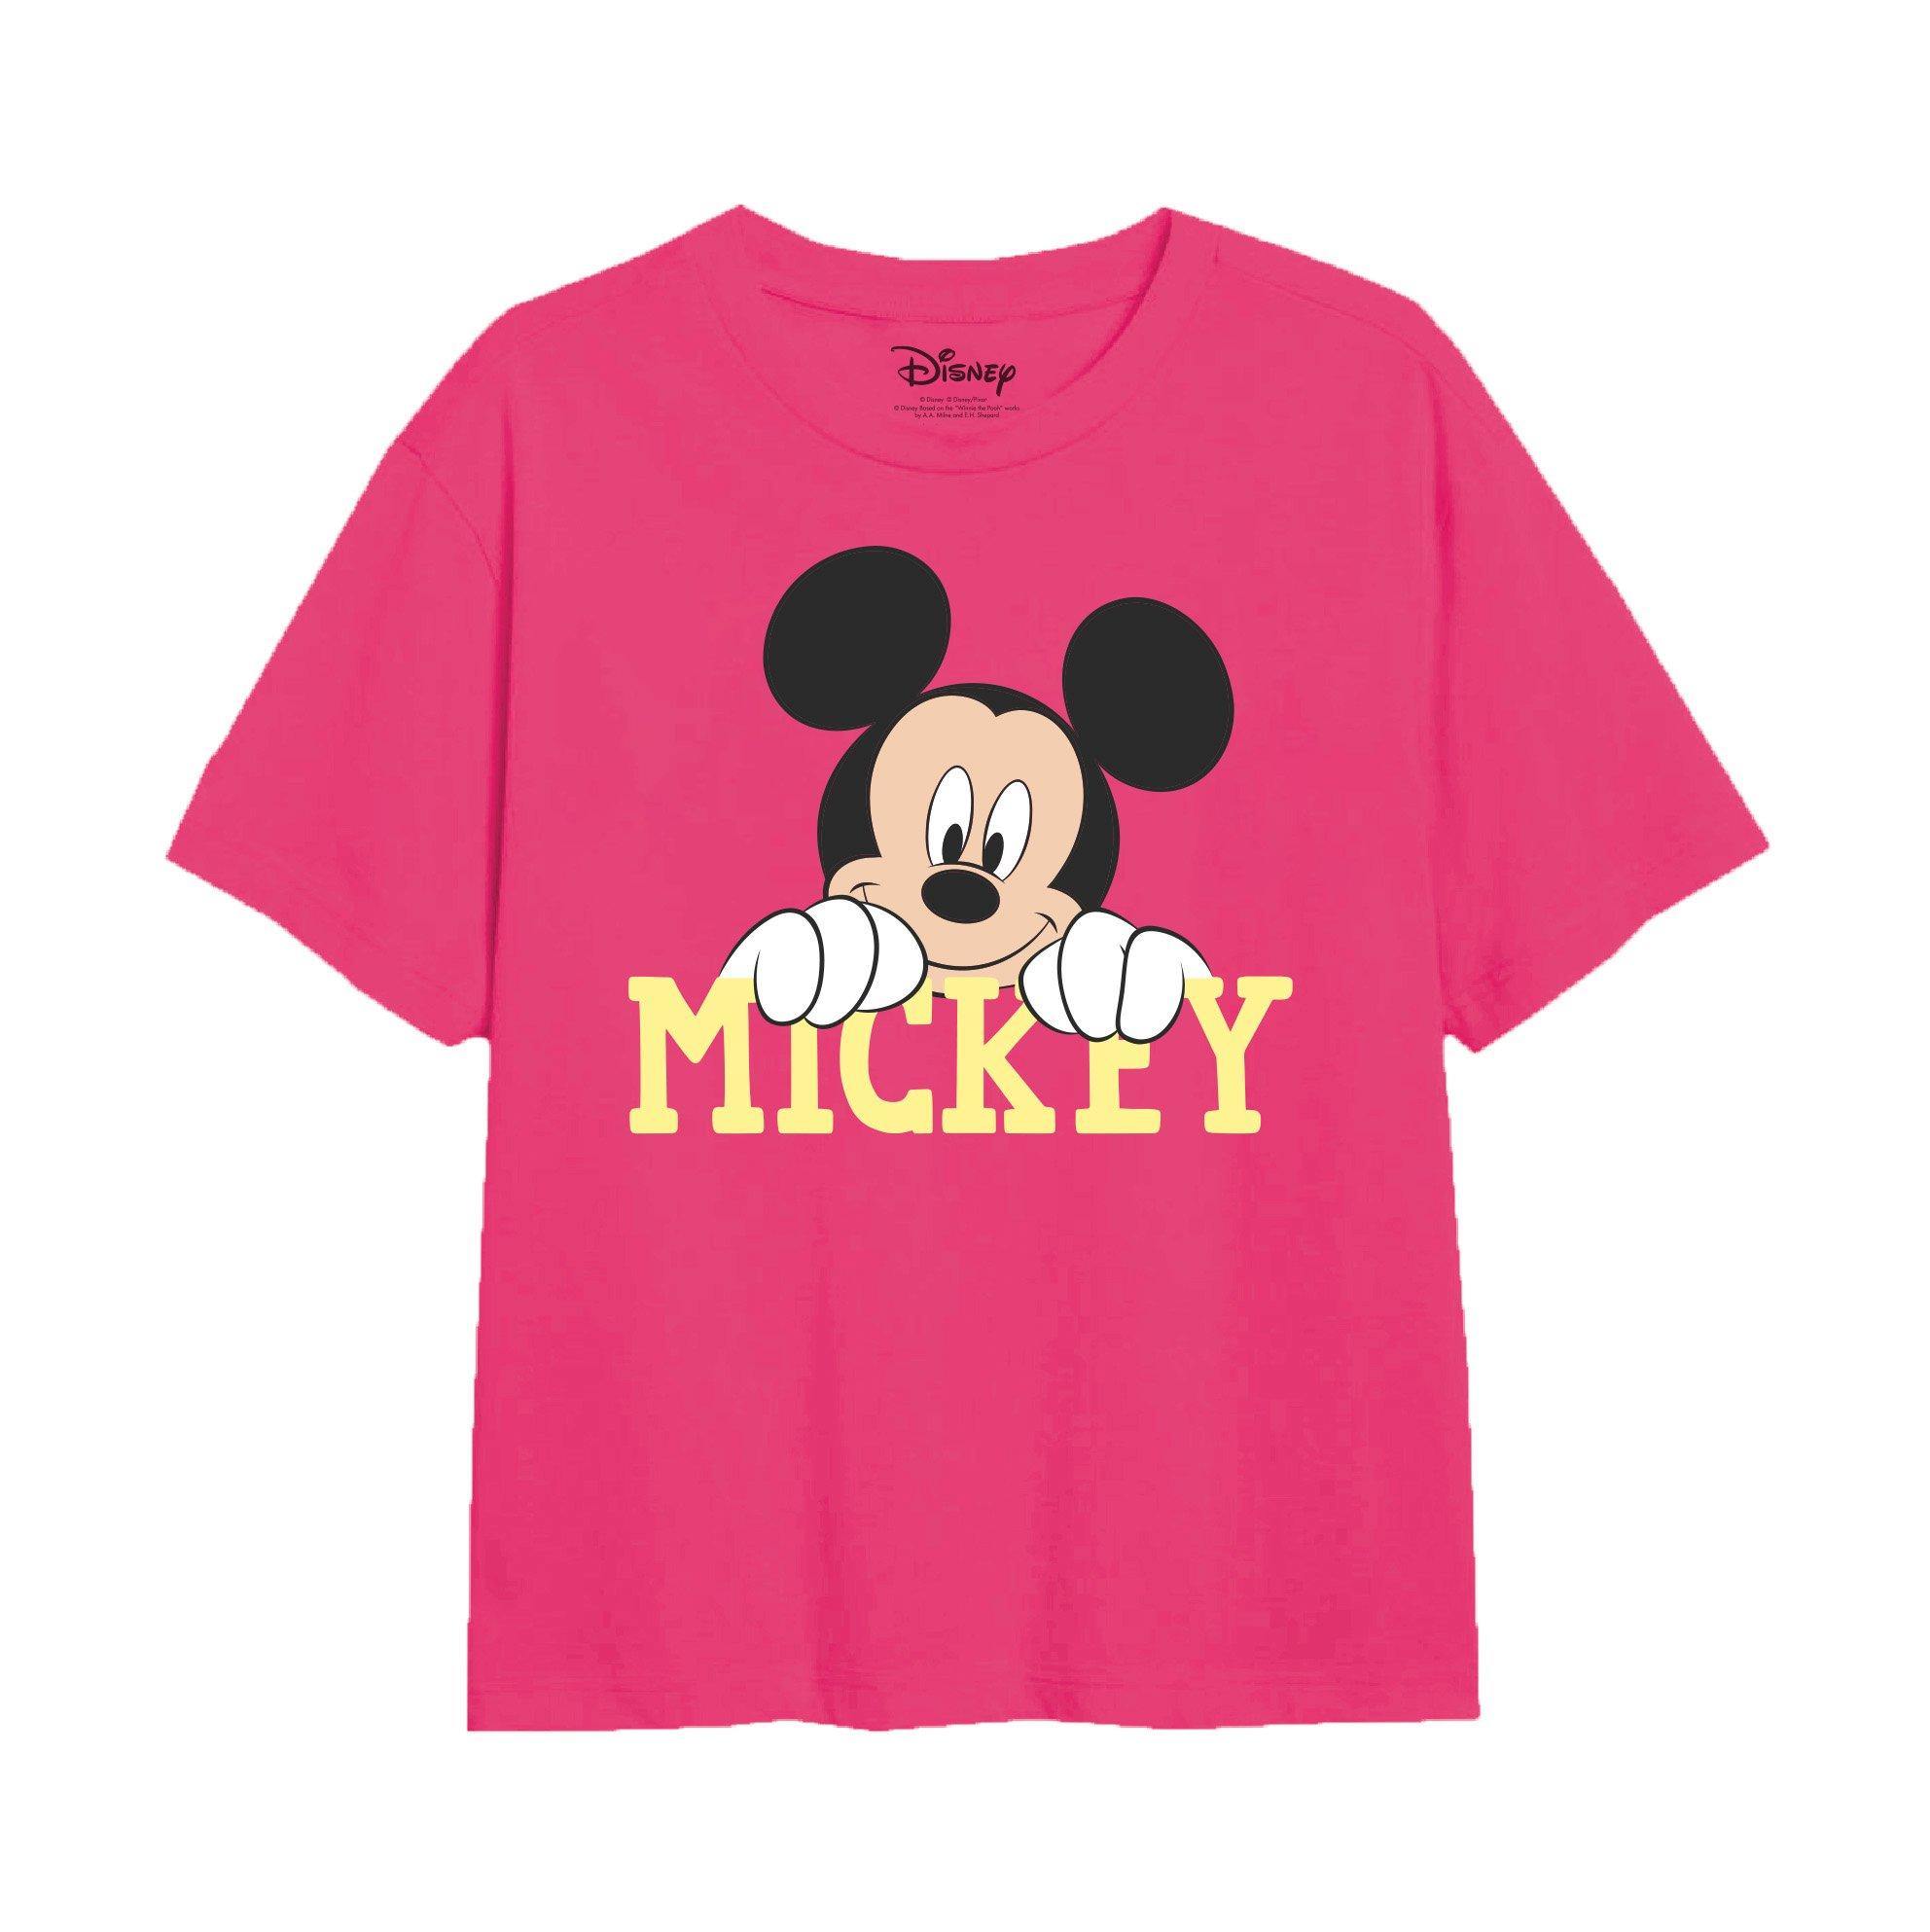 Футболка с милым лицом Микки Мауса Disney, розовый